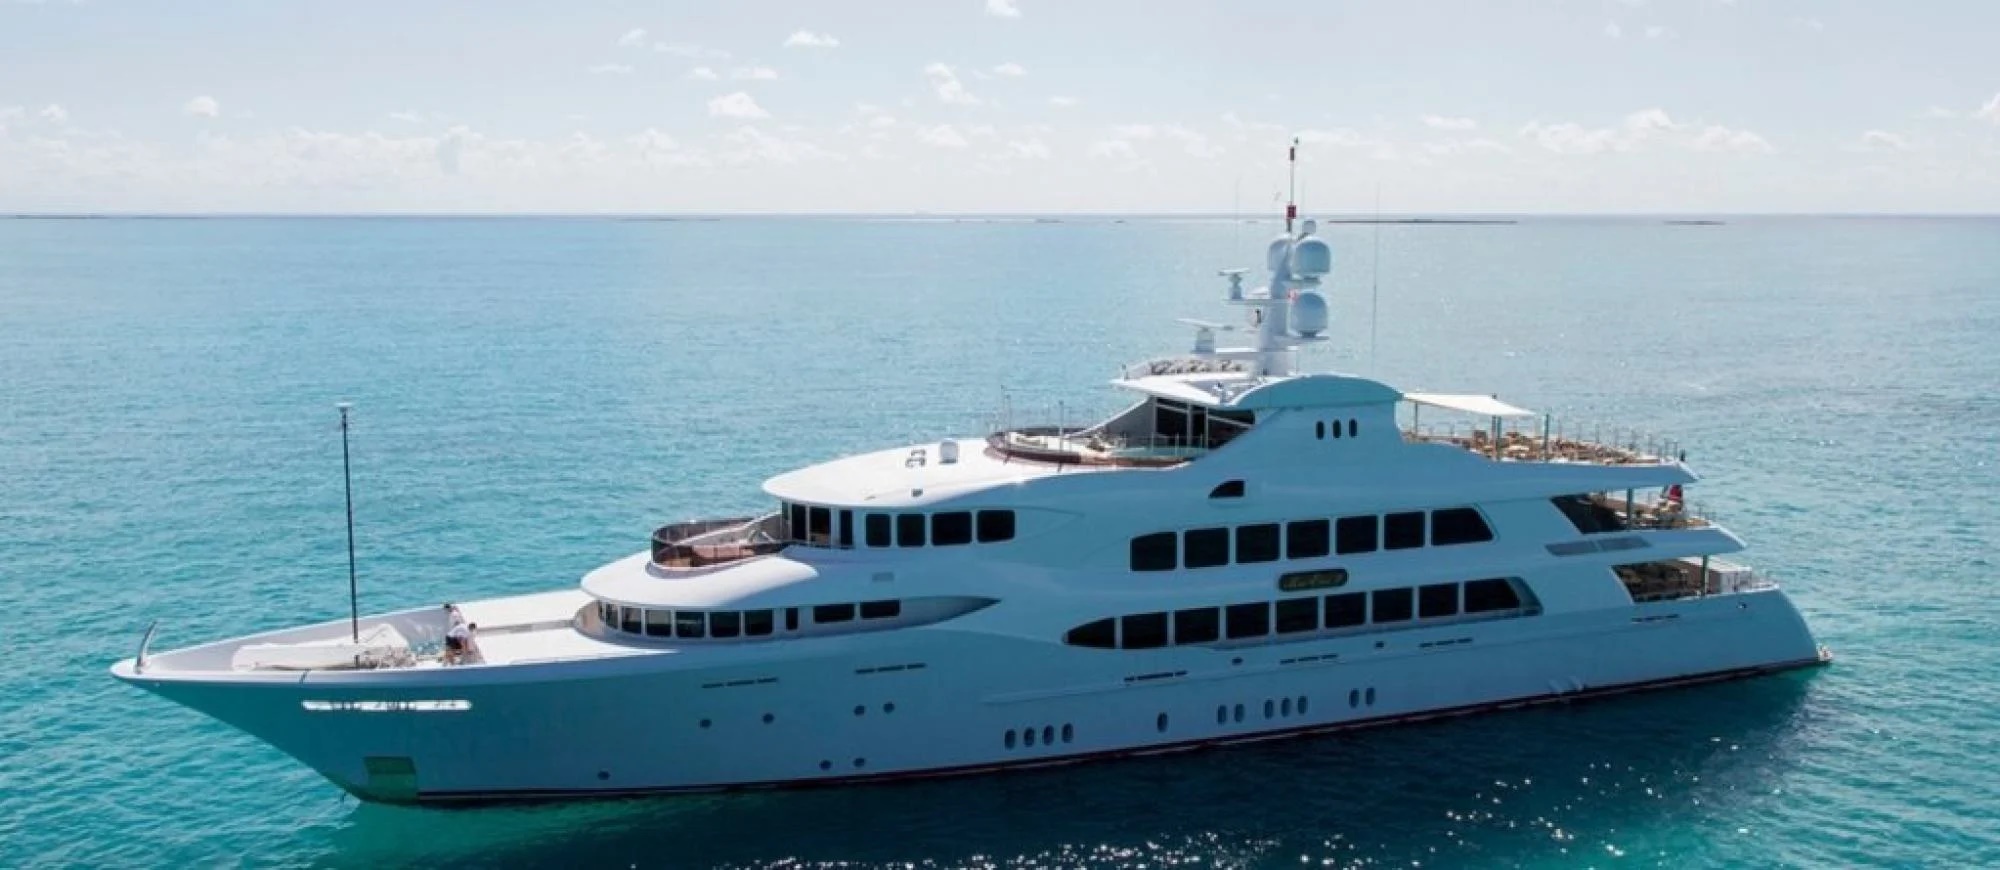 Những con tàu xa hoa bậc nhất triển lãm du thuyền Monaco, nơi quy tụ tài sản của nhà giàu thế giới - Ảnh 4.